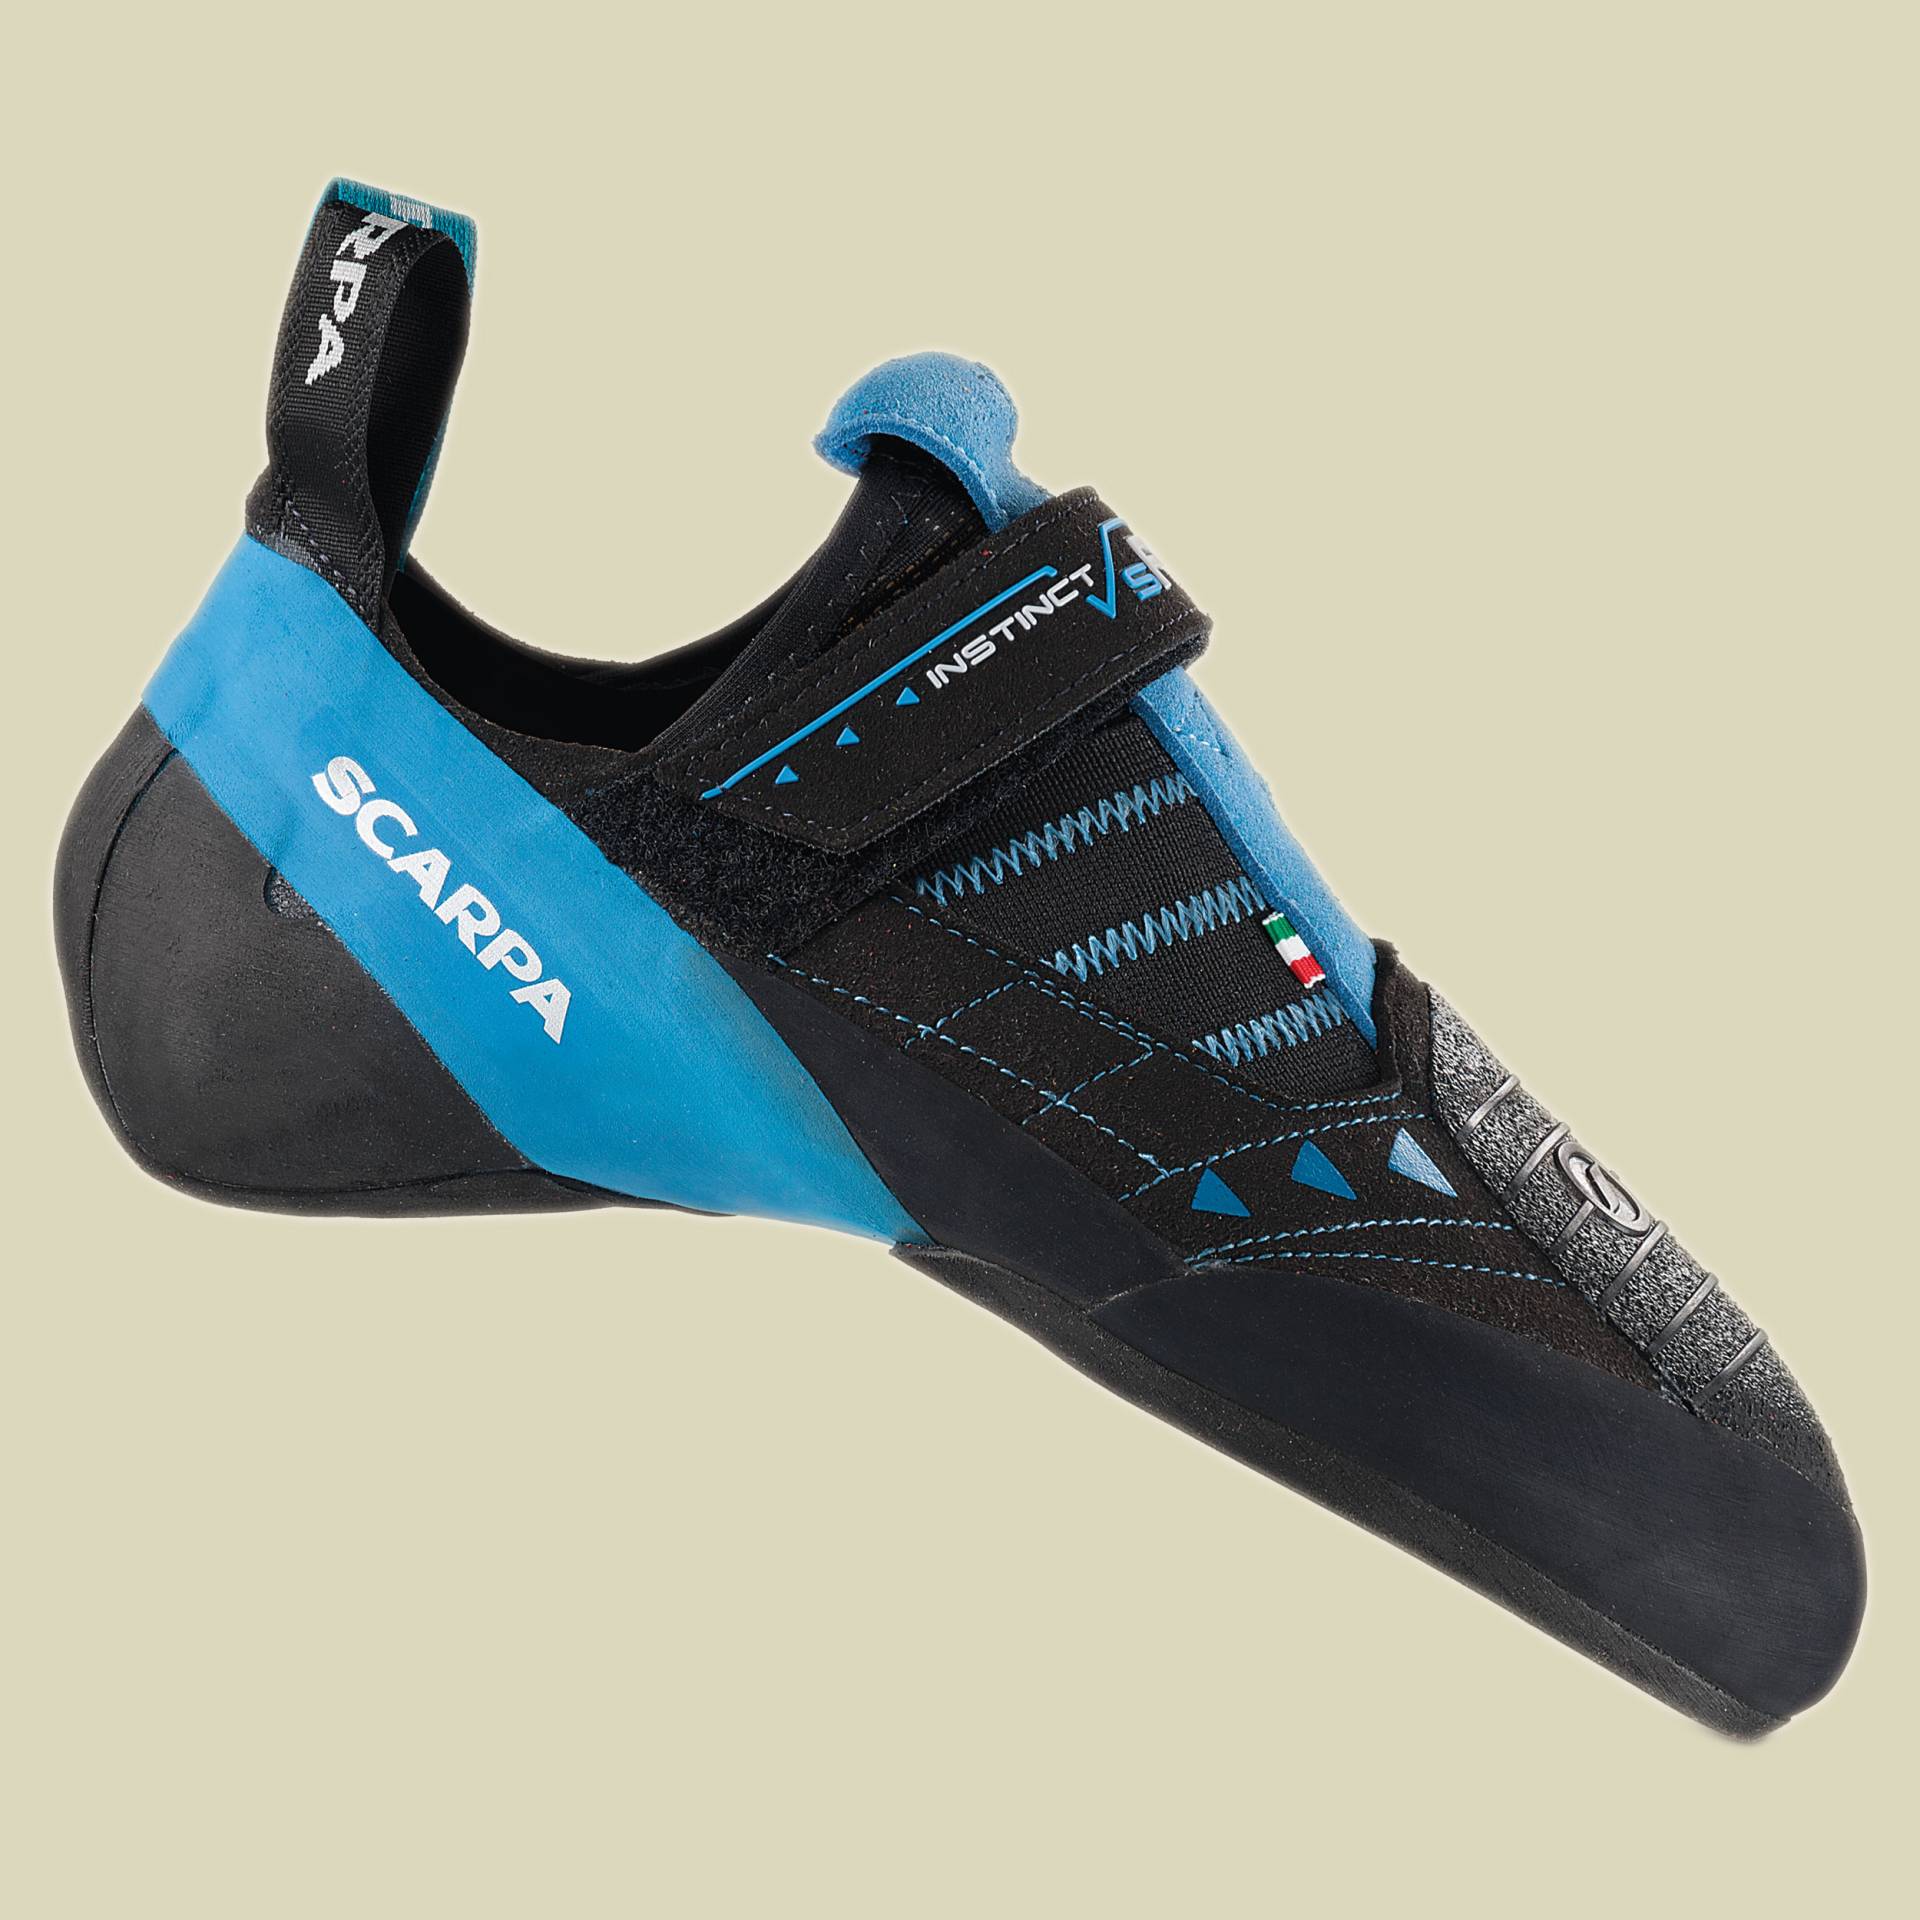 Instinct VSR Größe 43 Farbe black/azure von Scarpa Schuhe